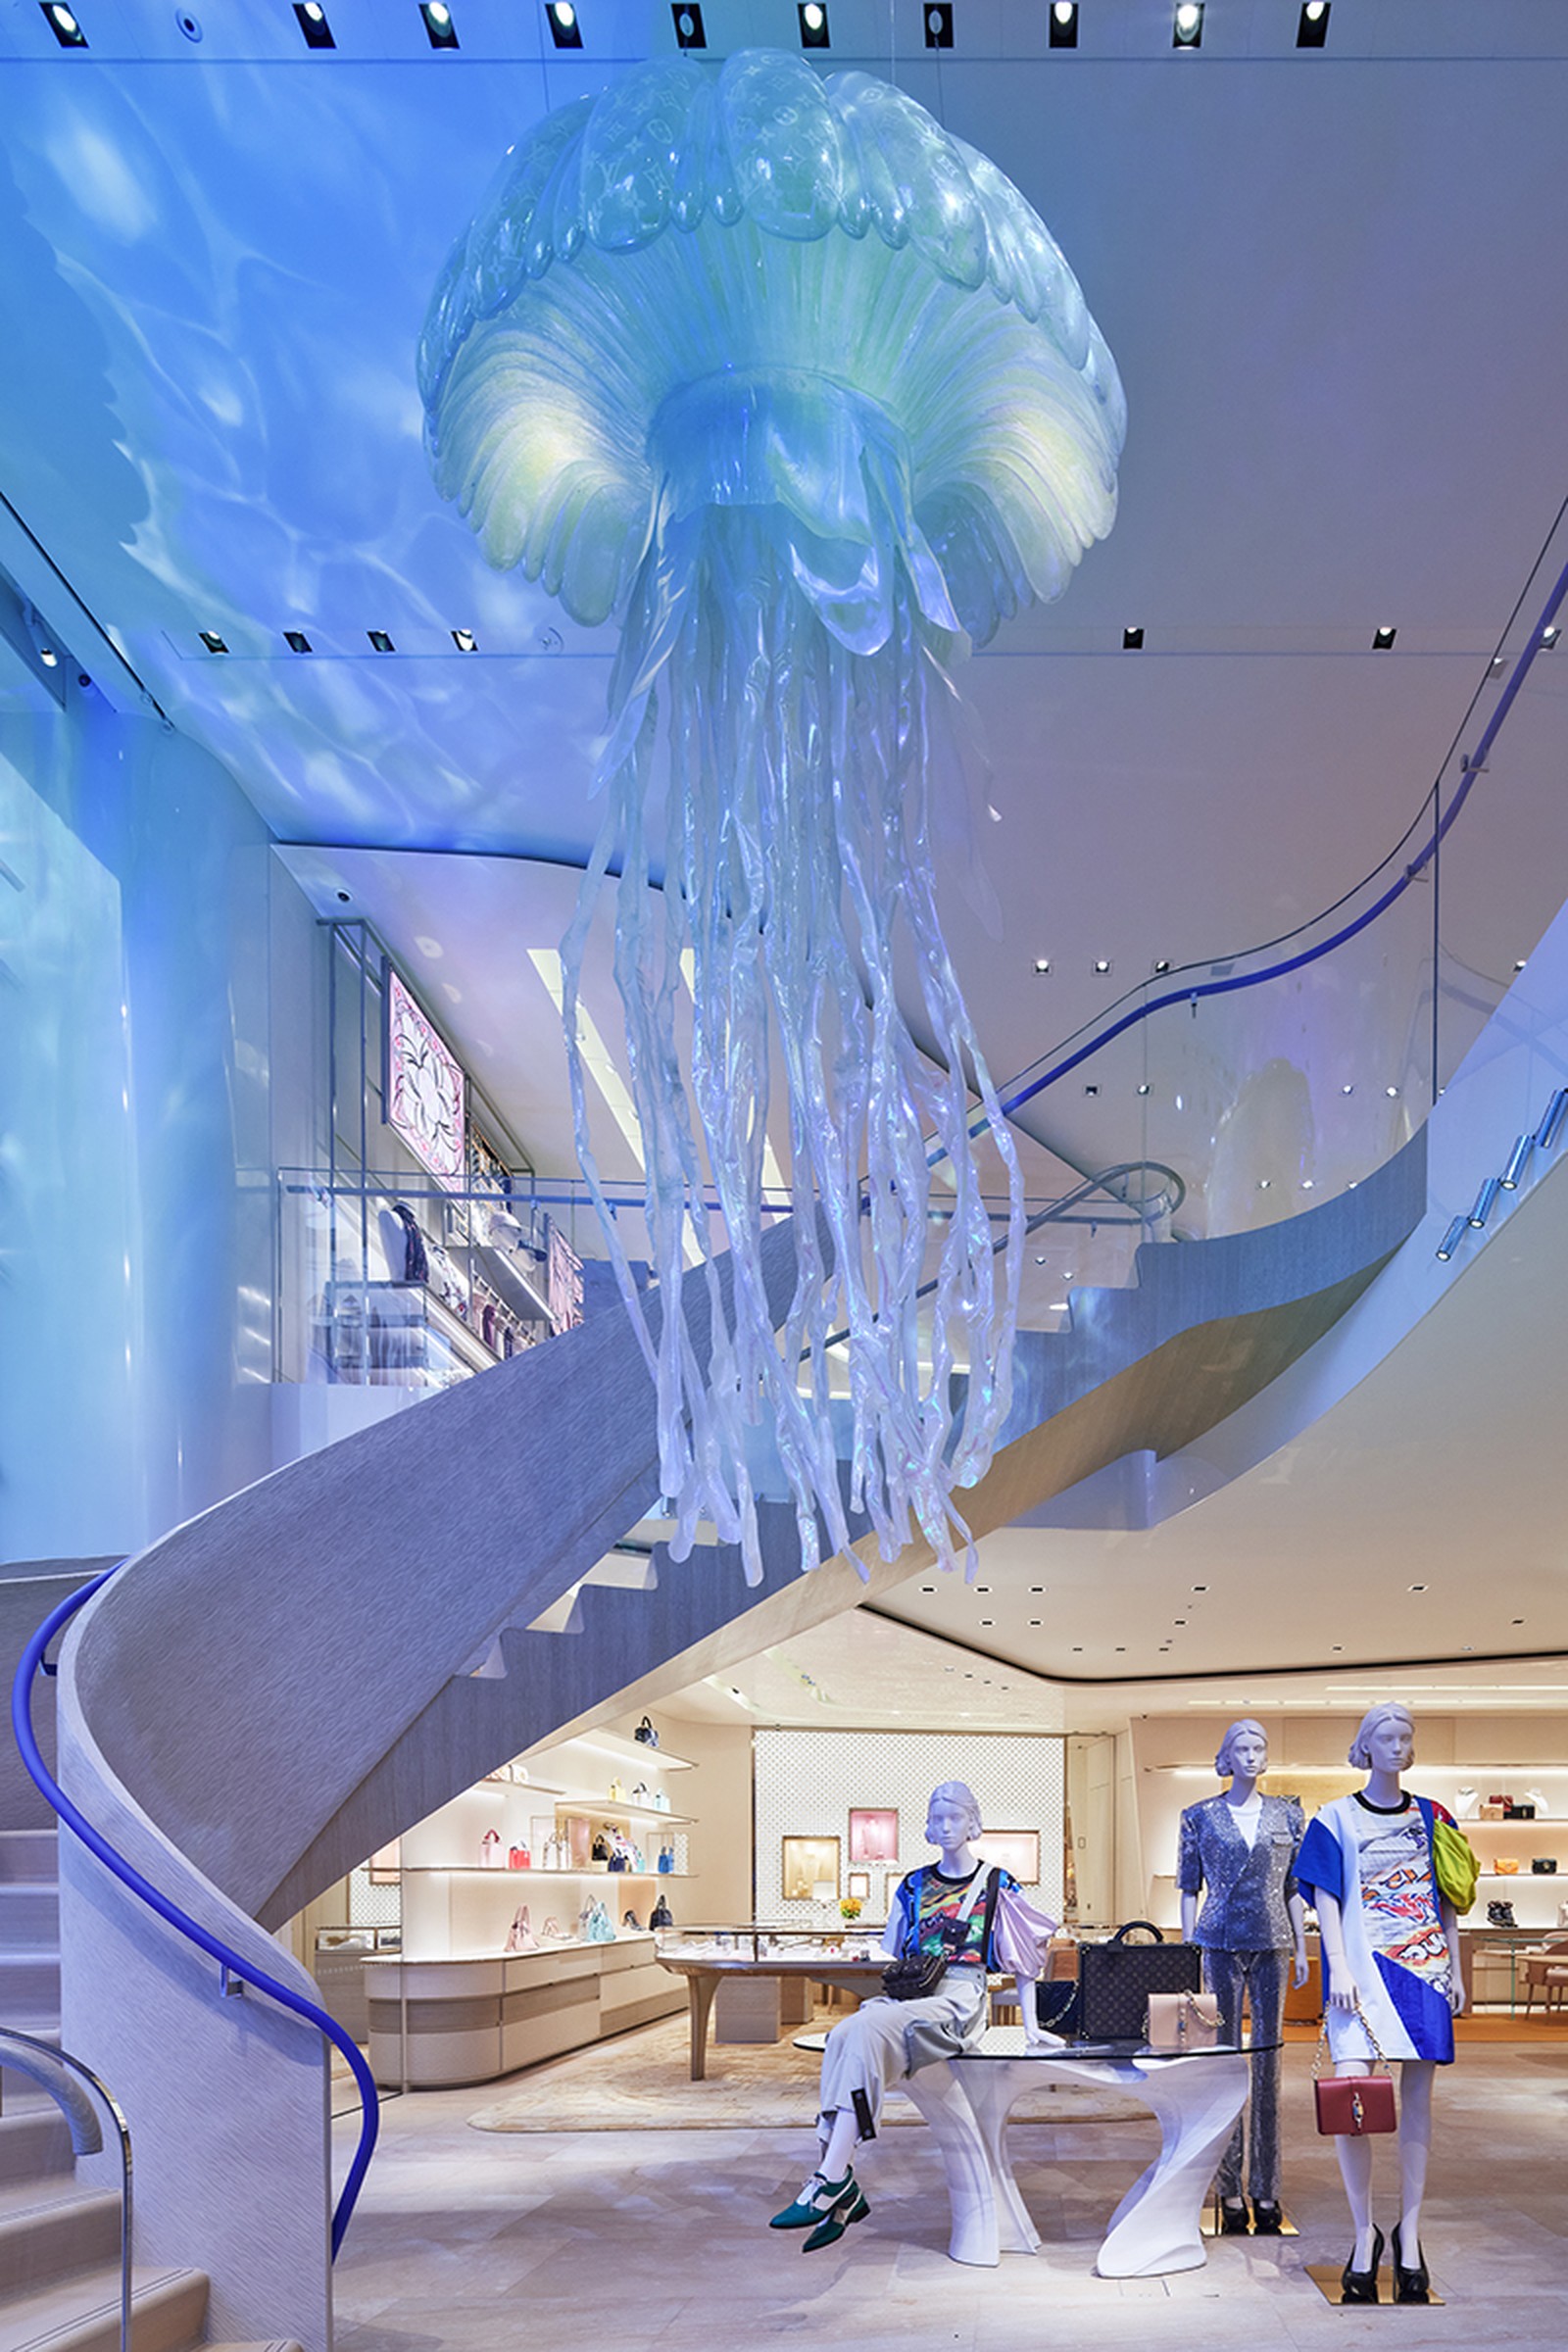 Медузи, водна гладь і страви від шеф-кухаря: Louis Vuitton відкриває магазин у Токіо